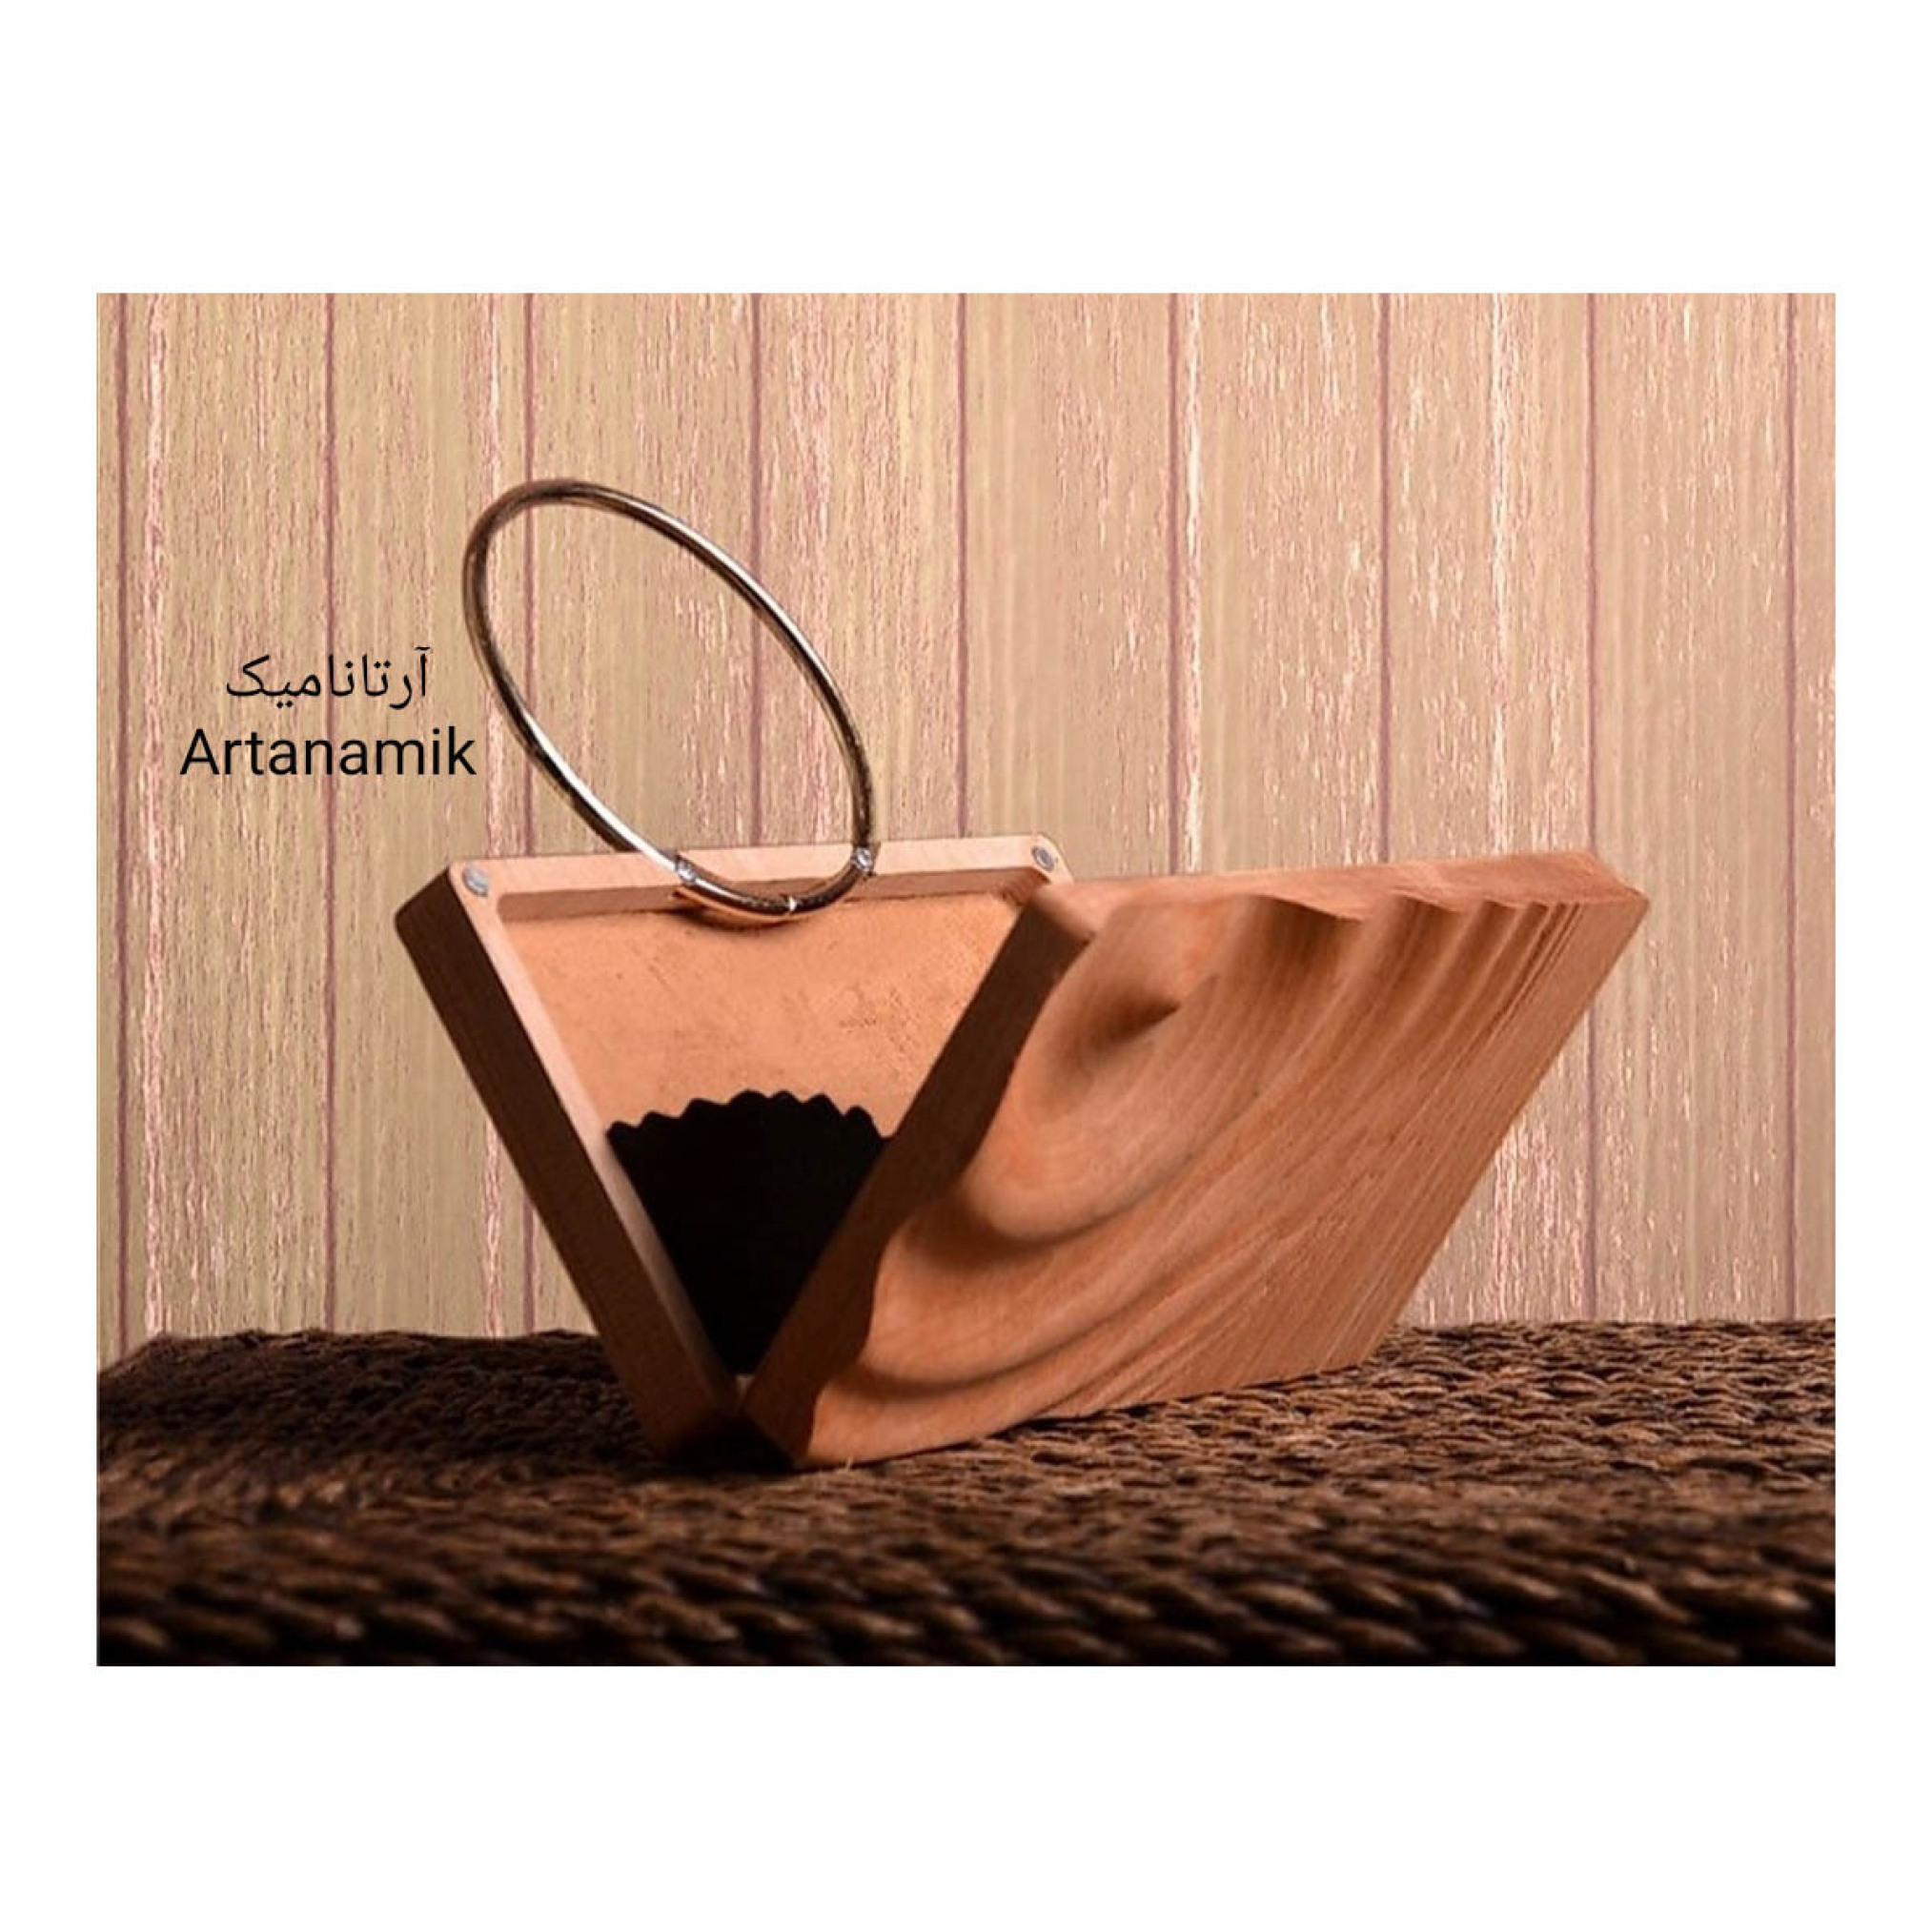  کیف چوبی کادویی، چرم دوزی شده و ساخته شده از چوب گردو | آرتانامیک 